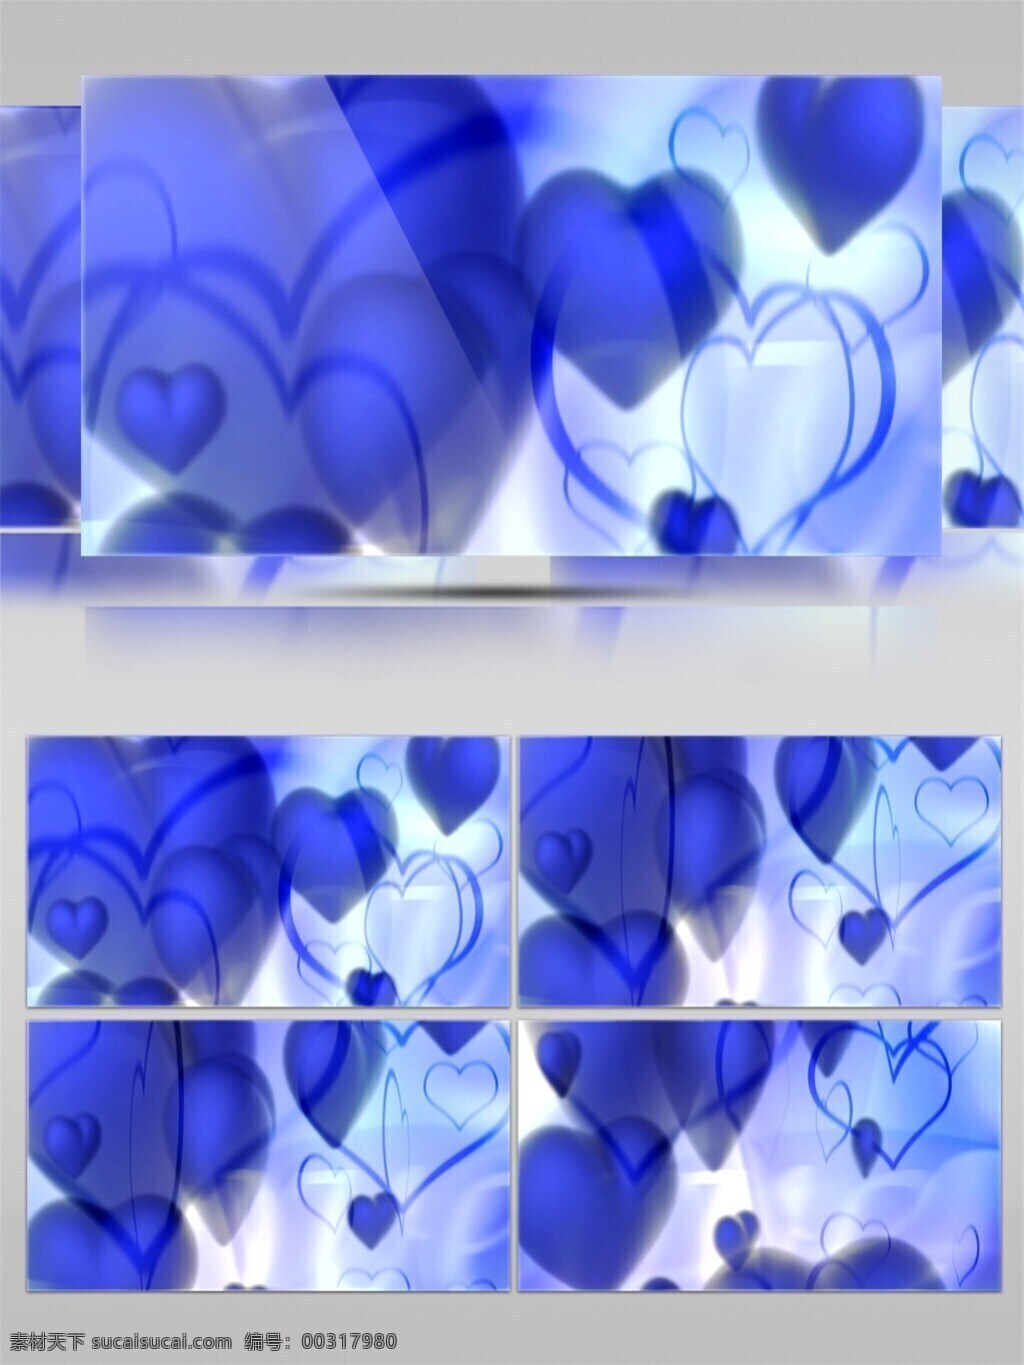 蓝色 爱心 图形 高清 视频 爱心图形 蓝色爱心 浪漫背景 特效 背景 炫酷蓝色